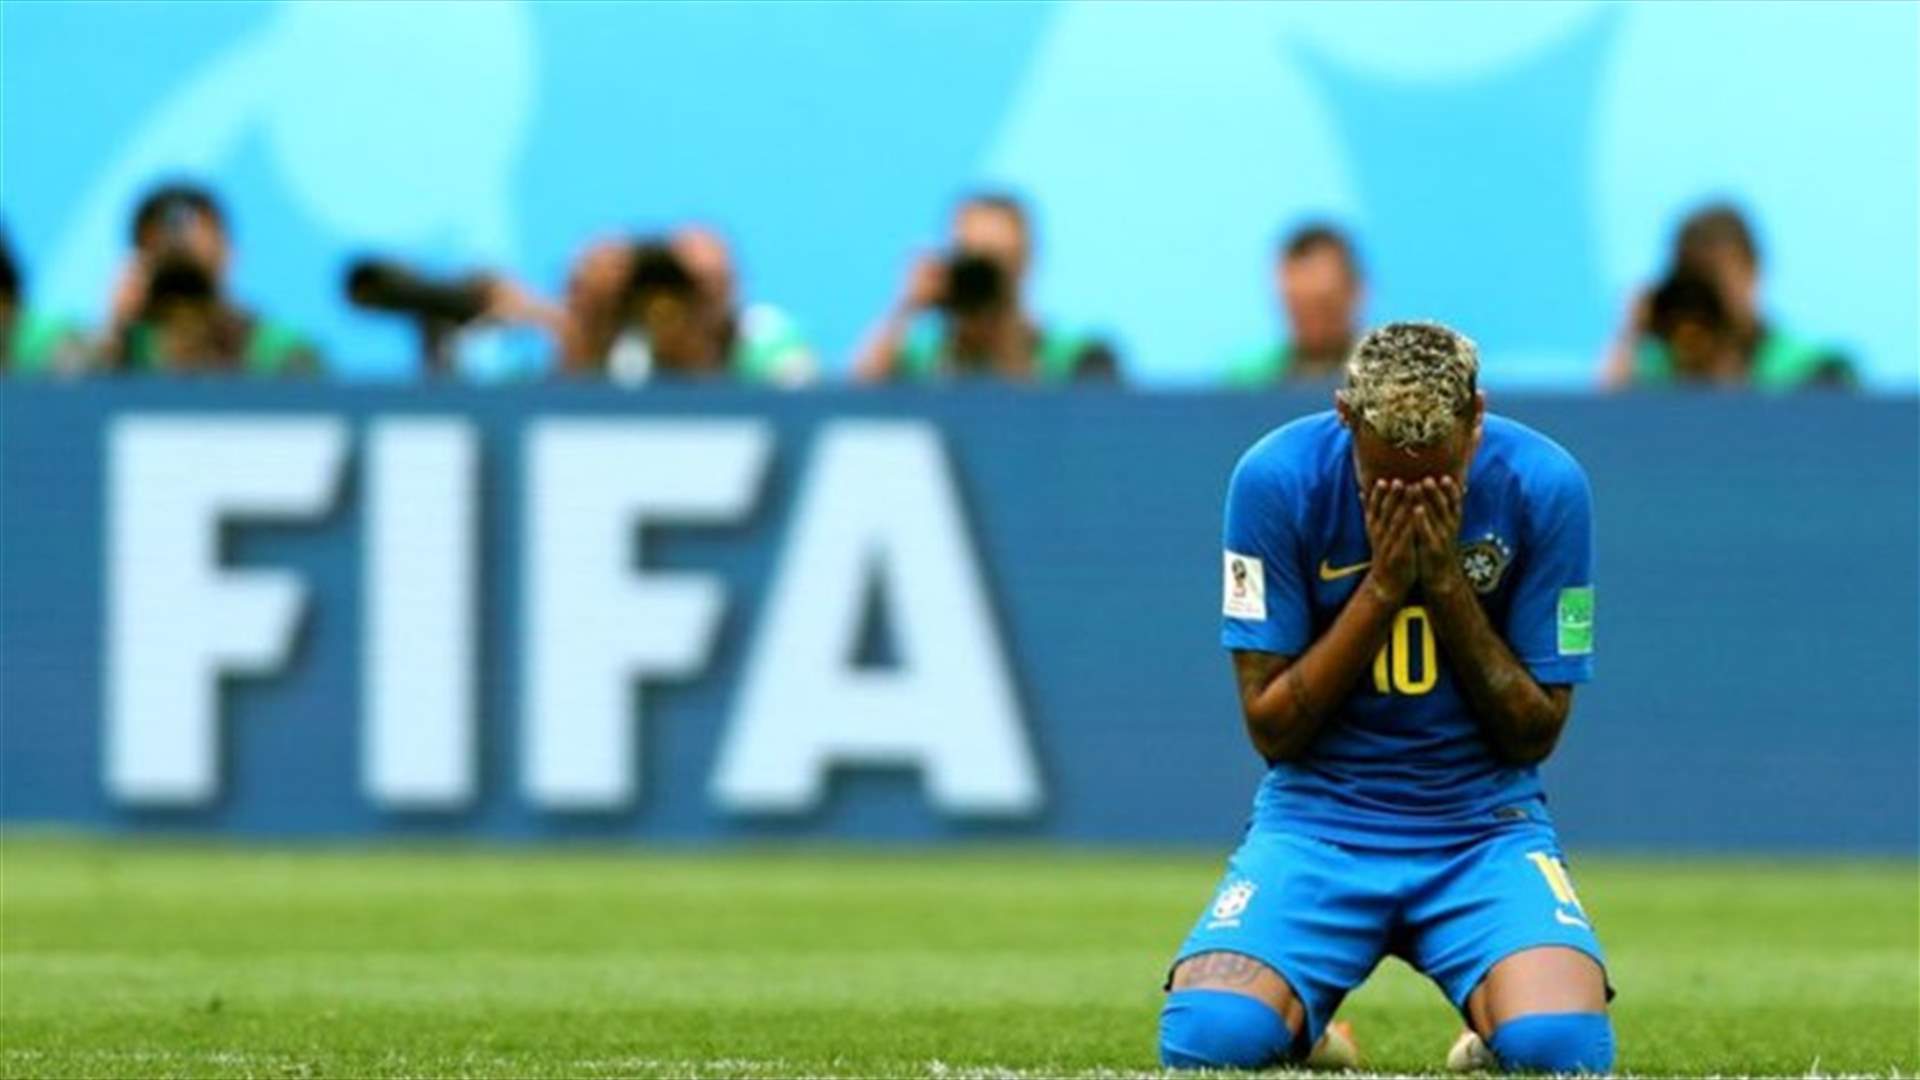 بالفيديو – نيمار يبكي على أرض الملعب بعد هدفه في اللحظة الأخيرة أمام كوستا ريكا